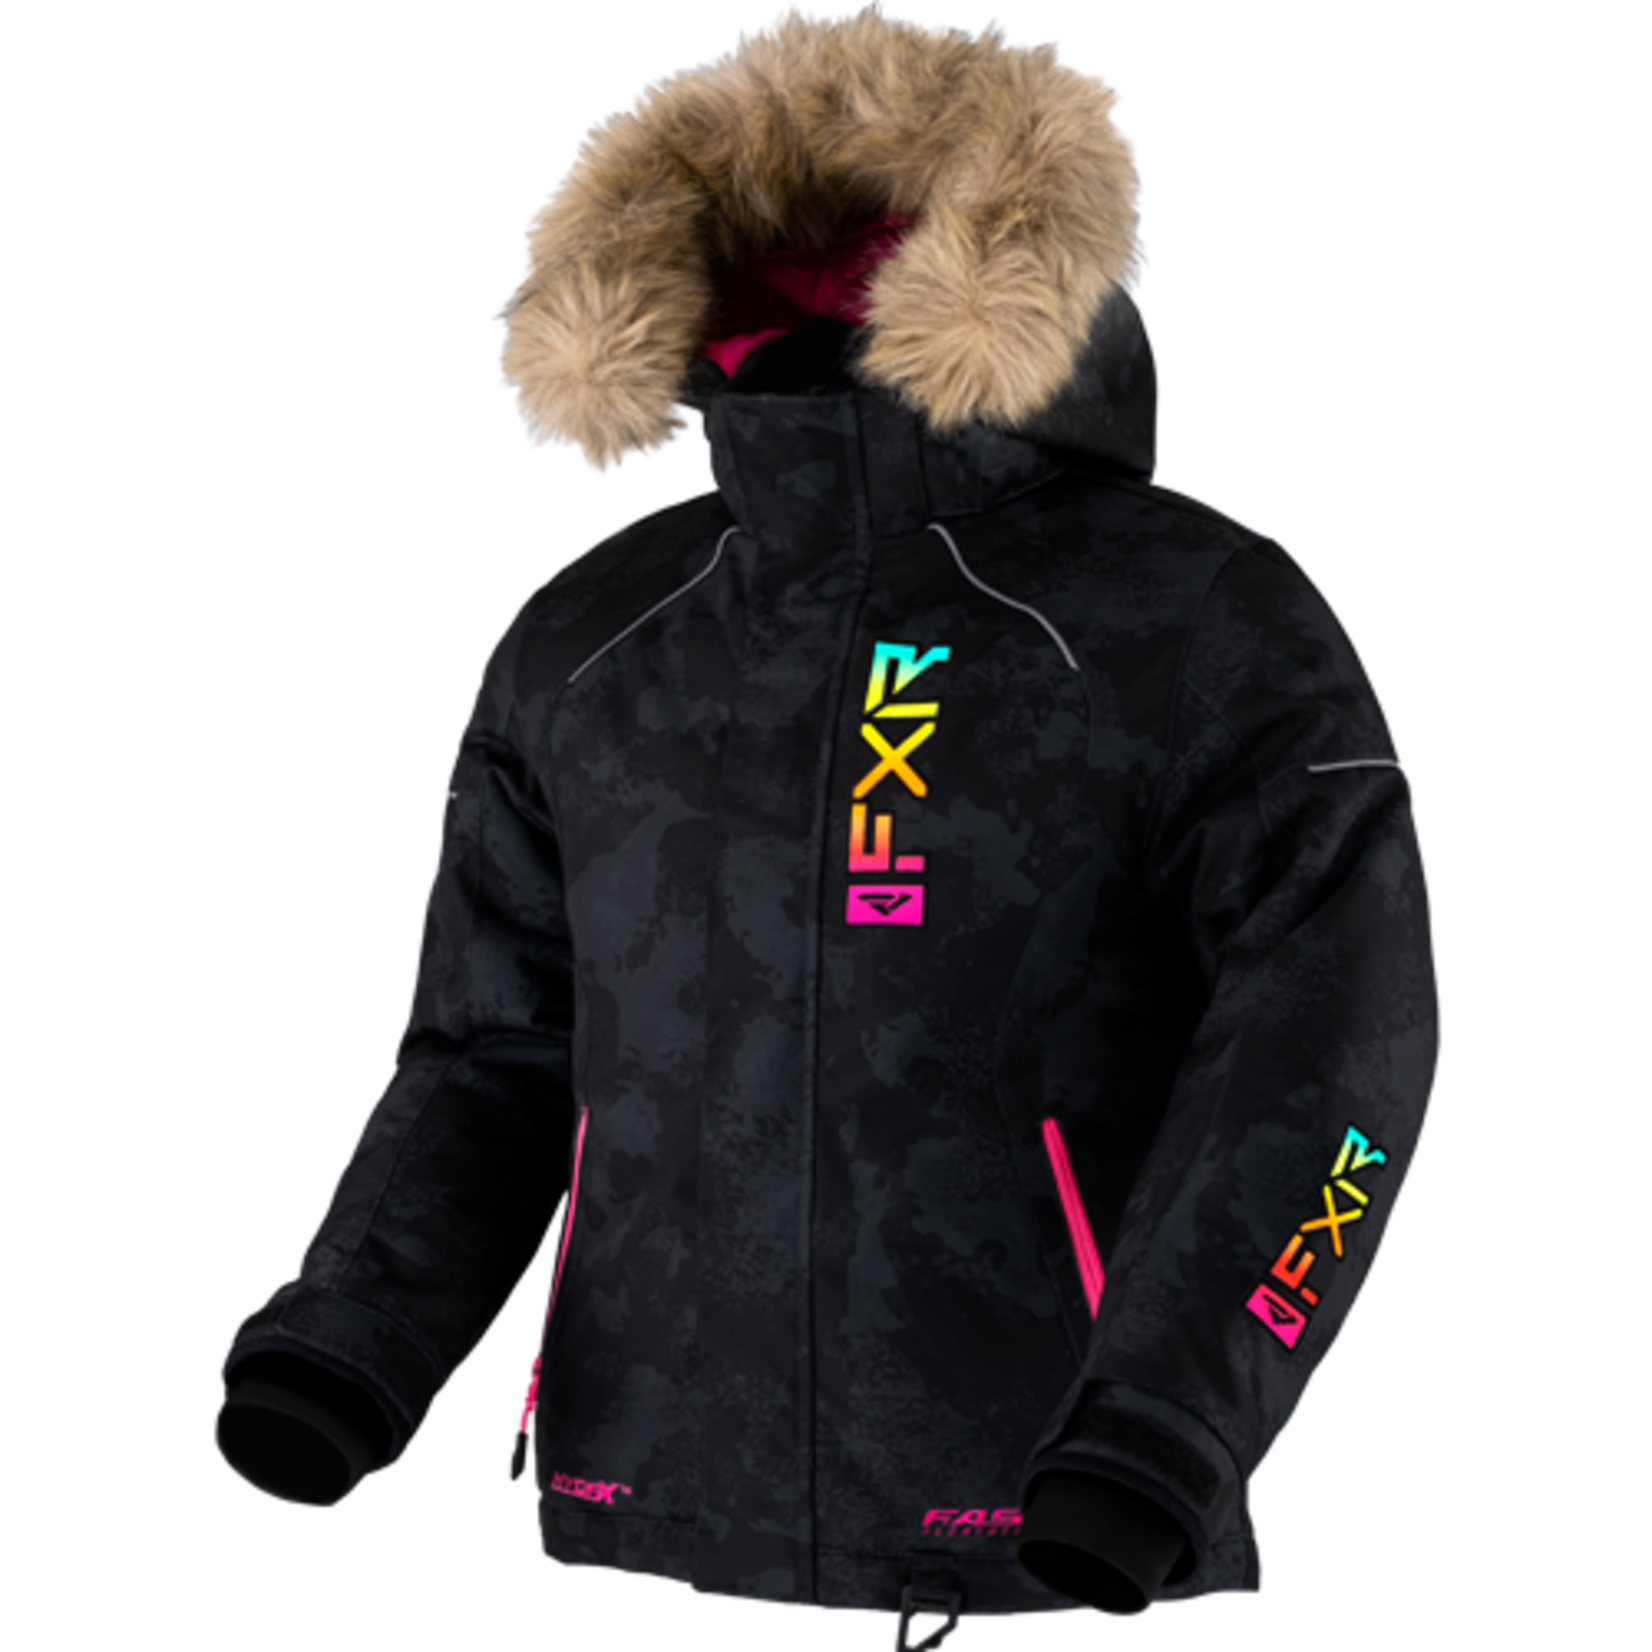 FXR FXR Winter Jacket, Fresh, Child, Girls